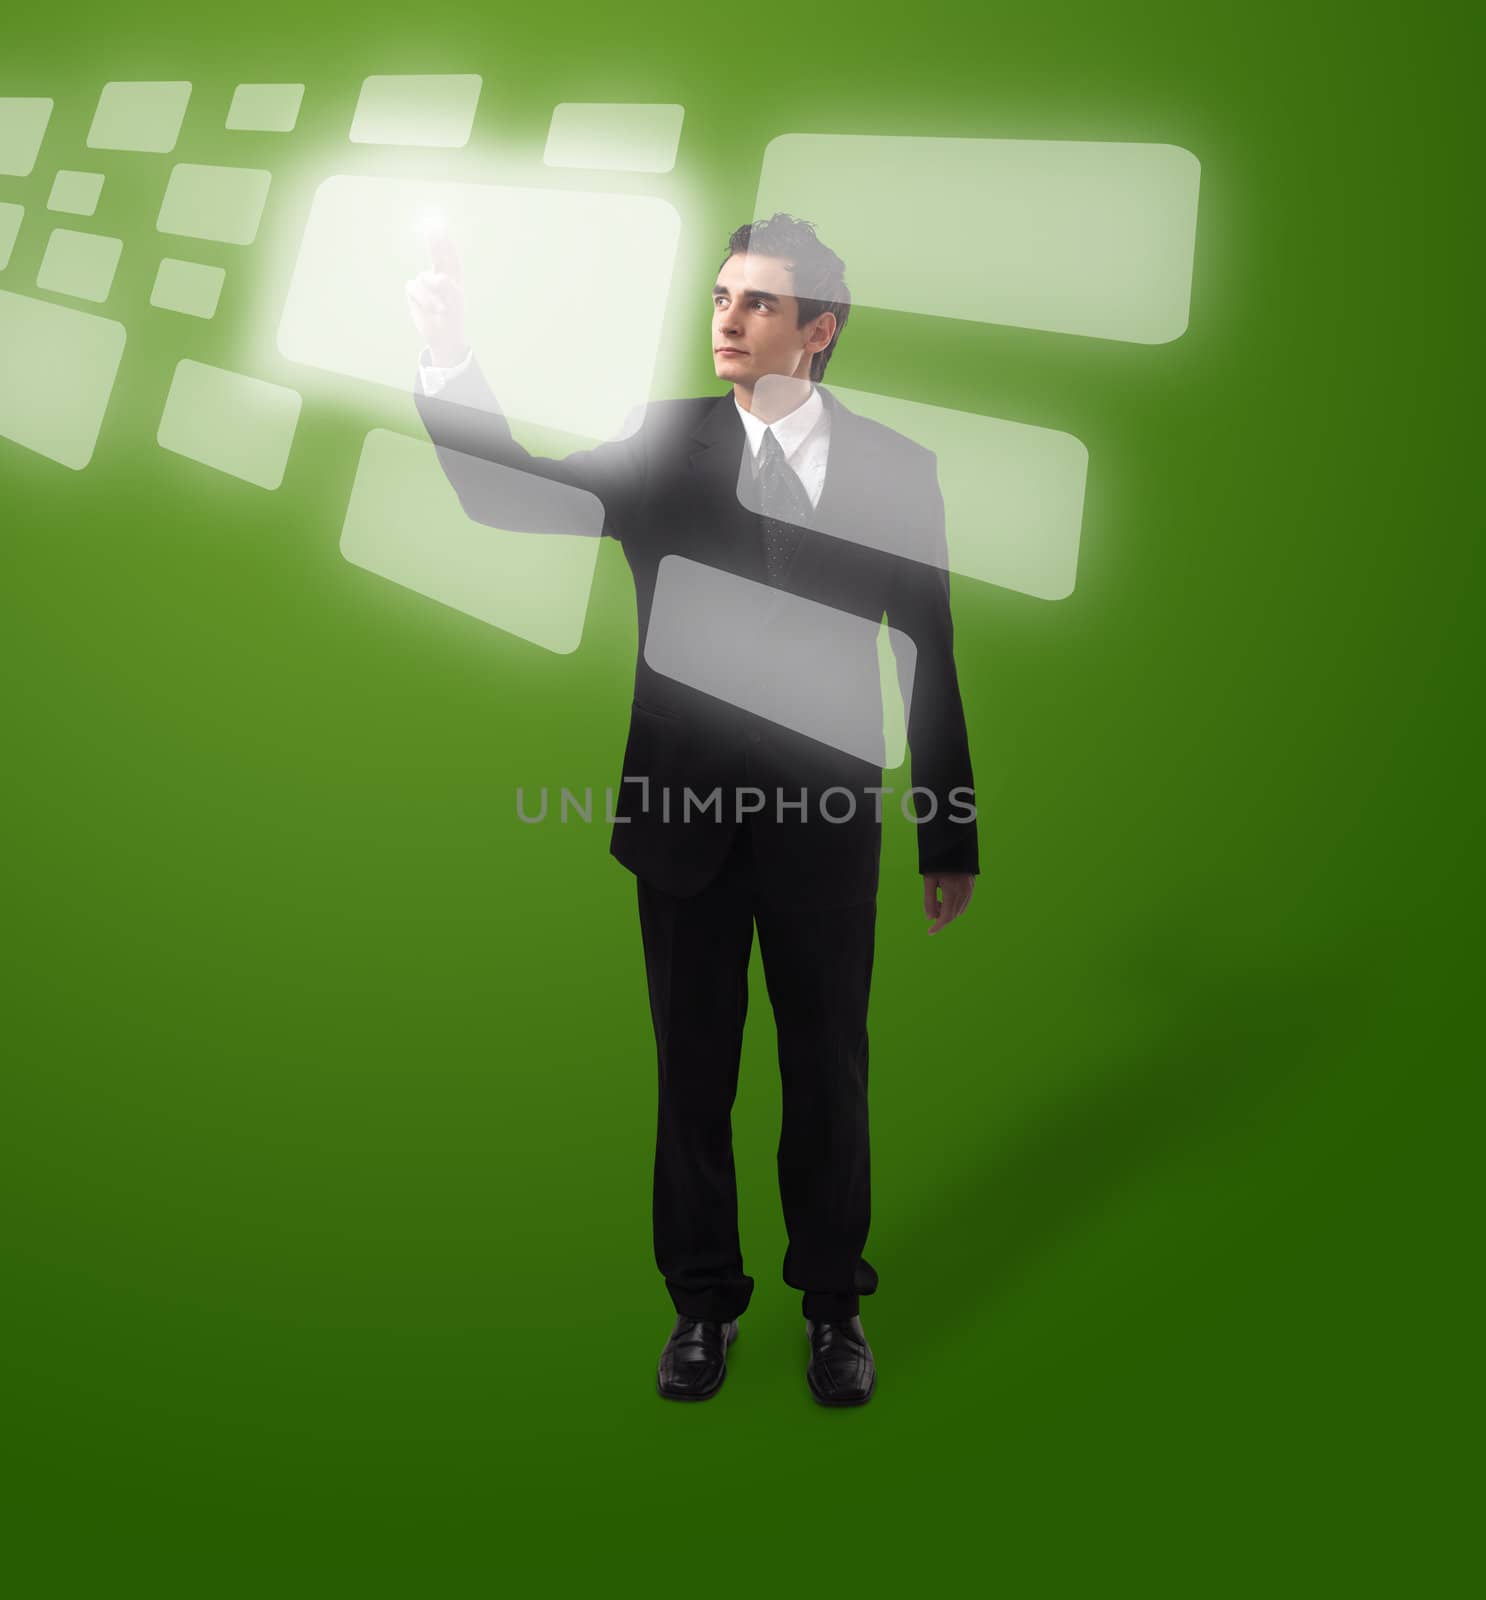 Business man pressing a touchscreen button, futuristic digital technology